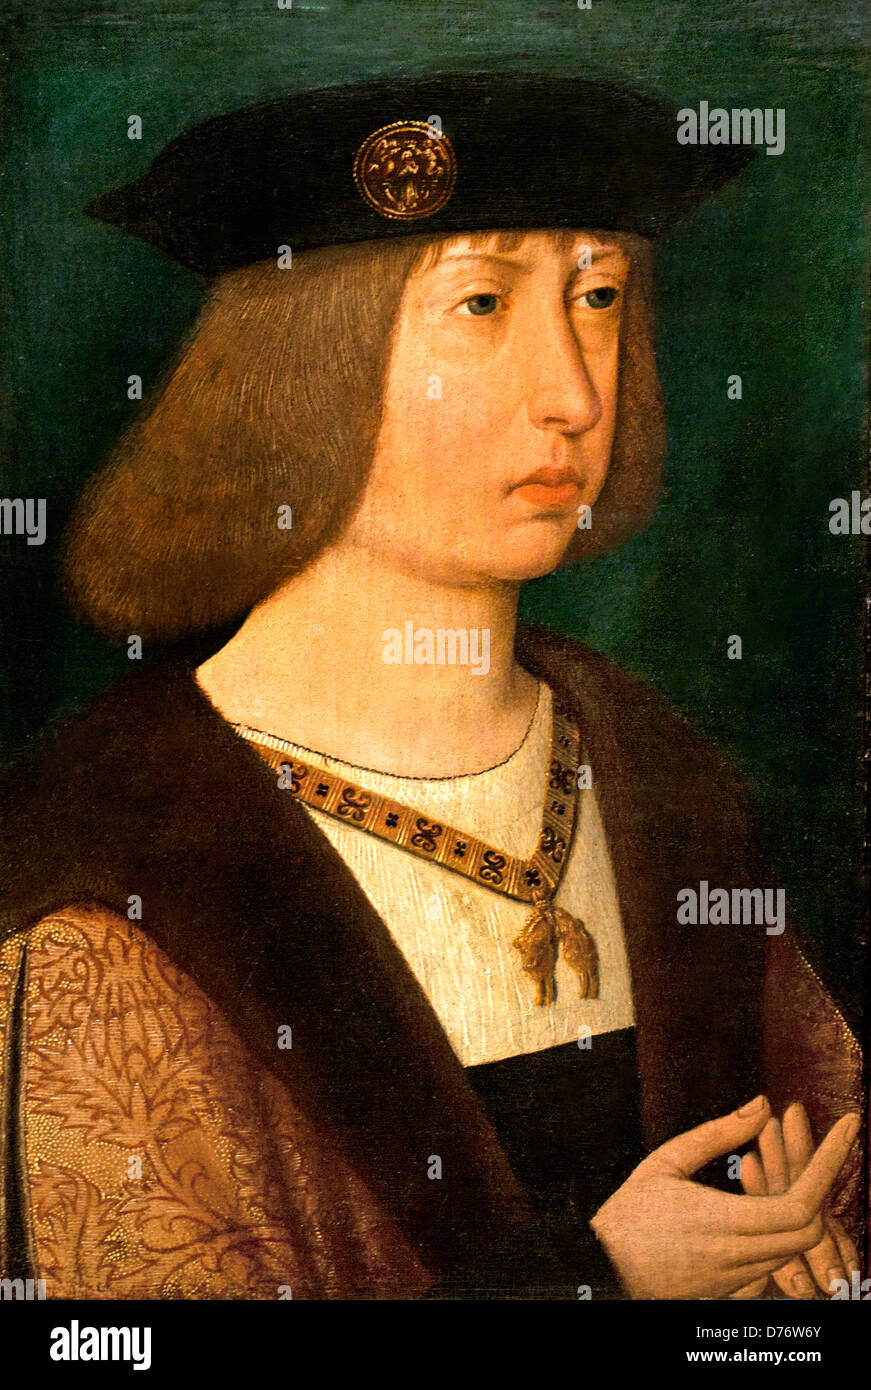 Retrato de Felipe el Hermoso 1500 Duque de Borgoña Francia Países Bajos del sur Foto de stock